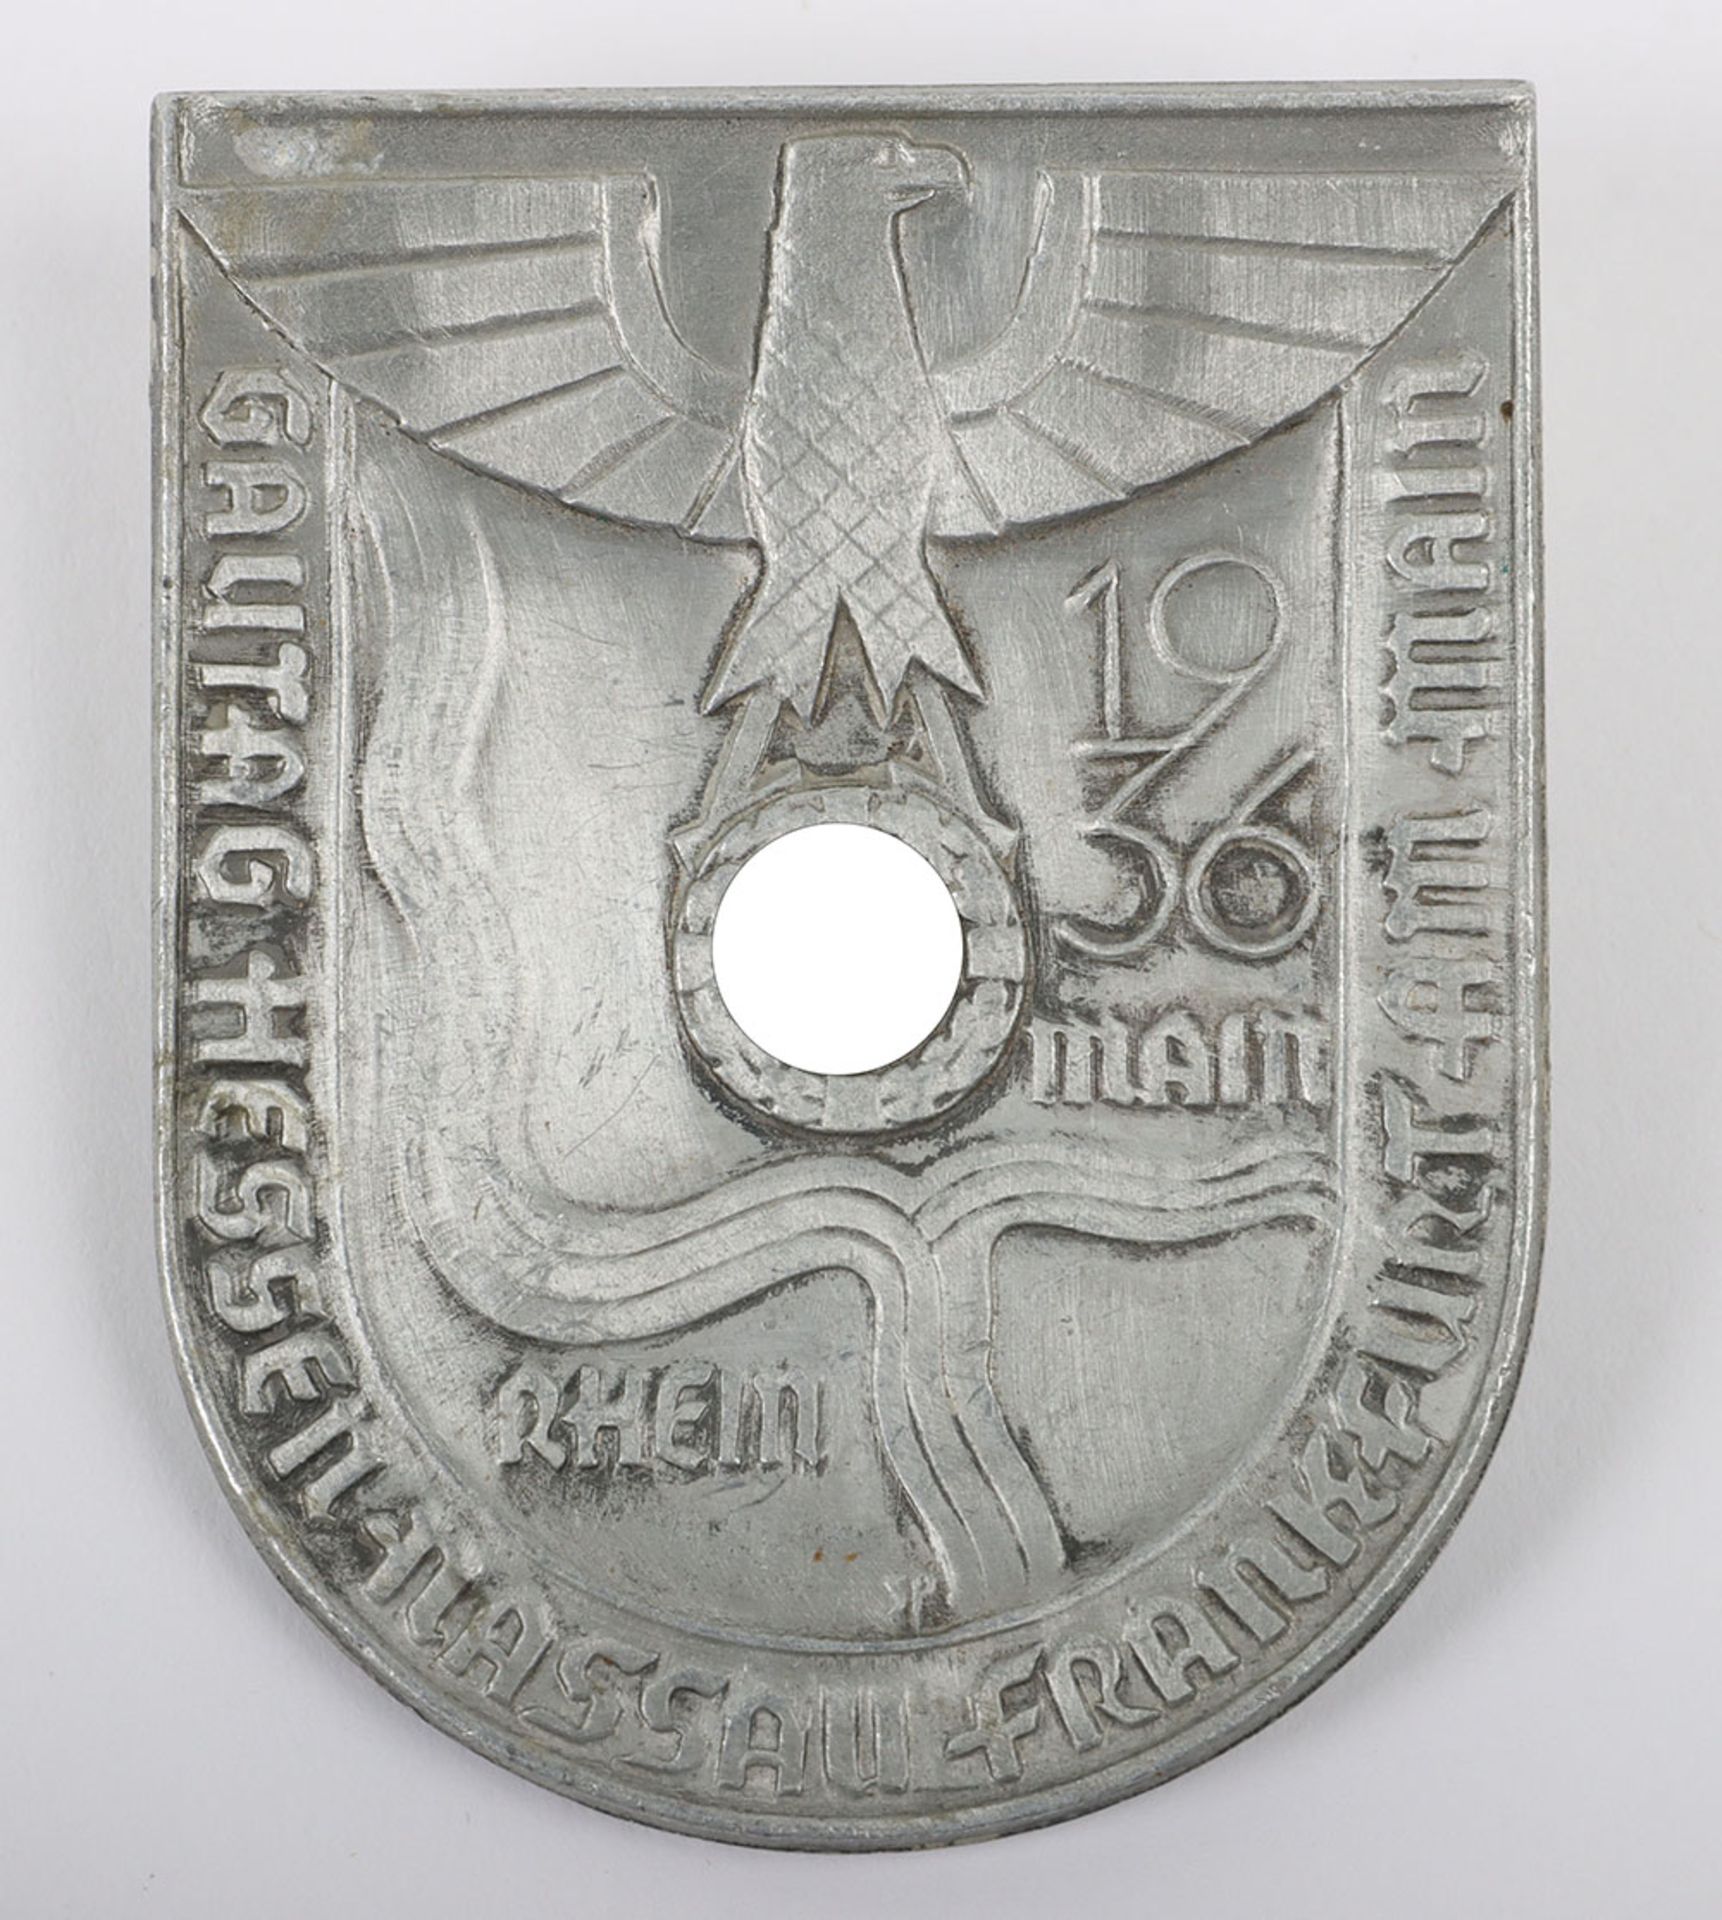 Third Reich Gautag Hessen-Nassau Frankfurt am Main Day Badge